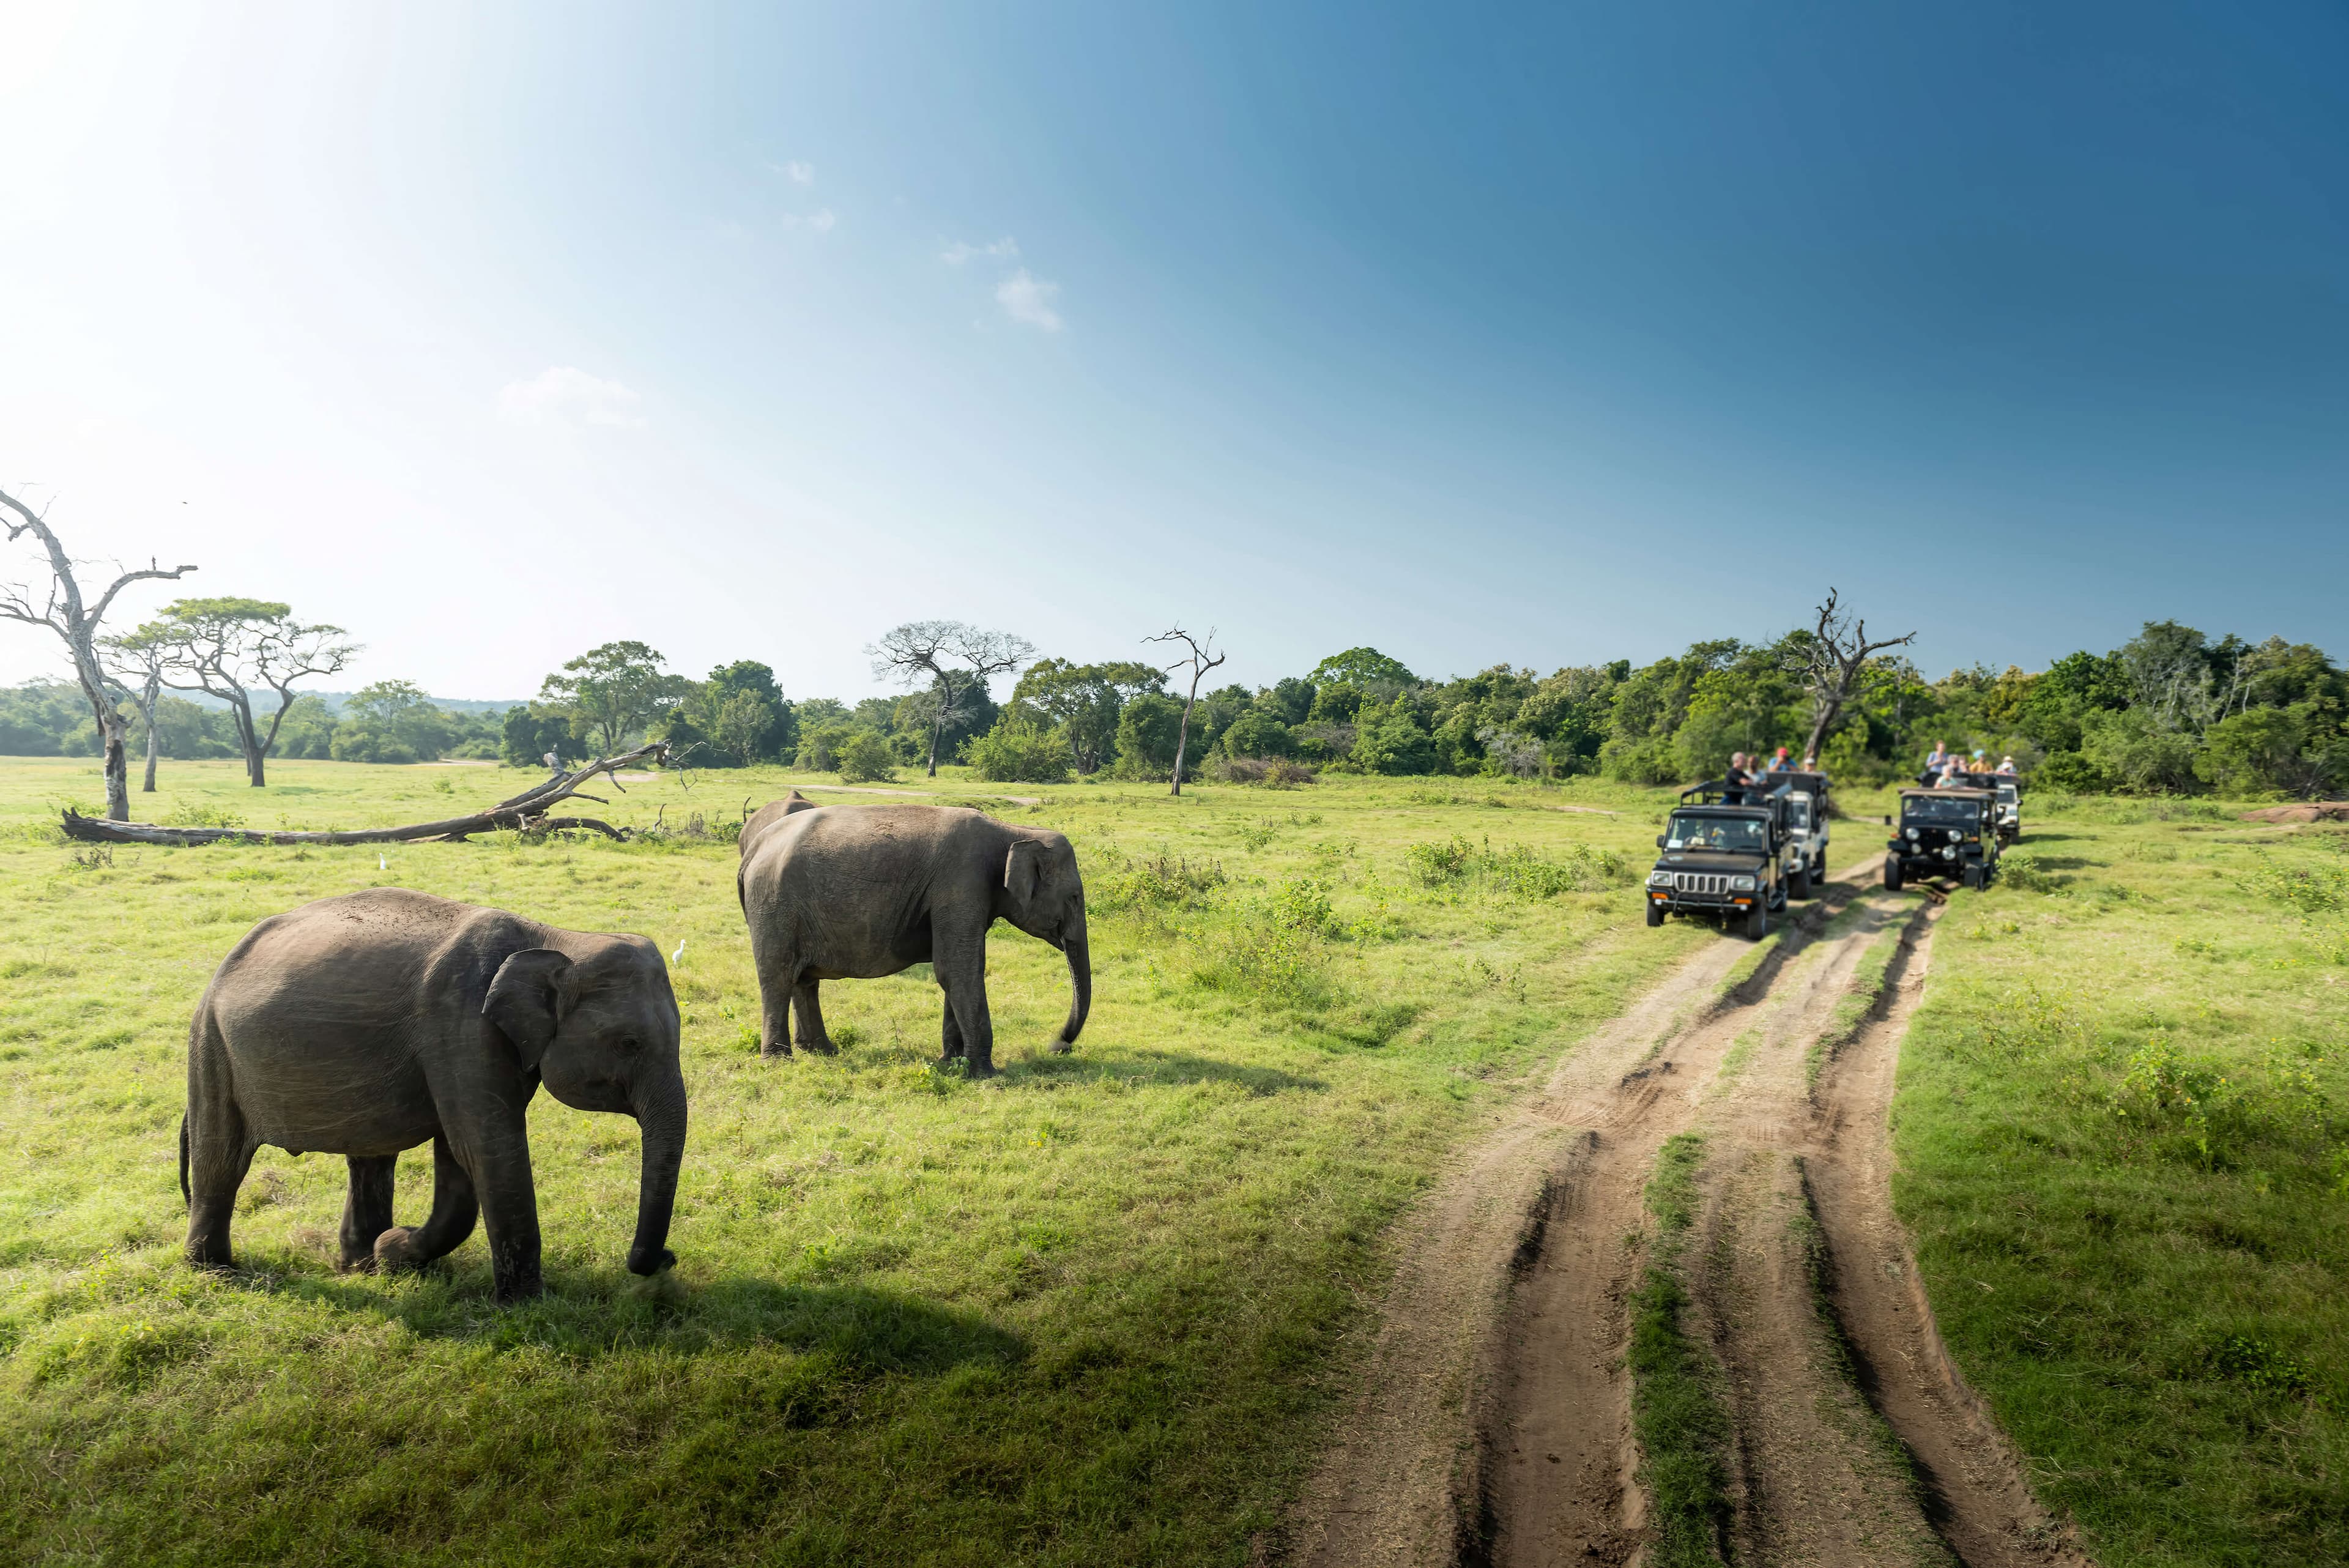 الأفيال البرية في المناظر الطبيعية الجميلة في يالا ، سريلانكا.